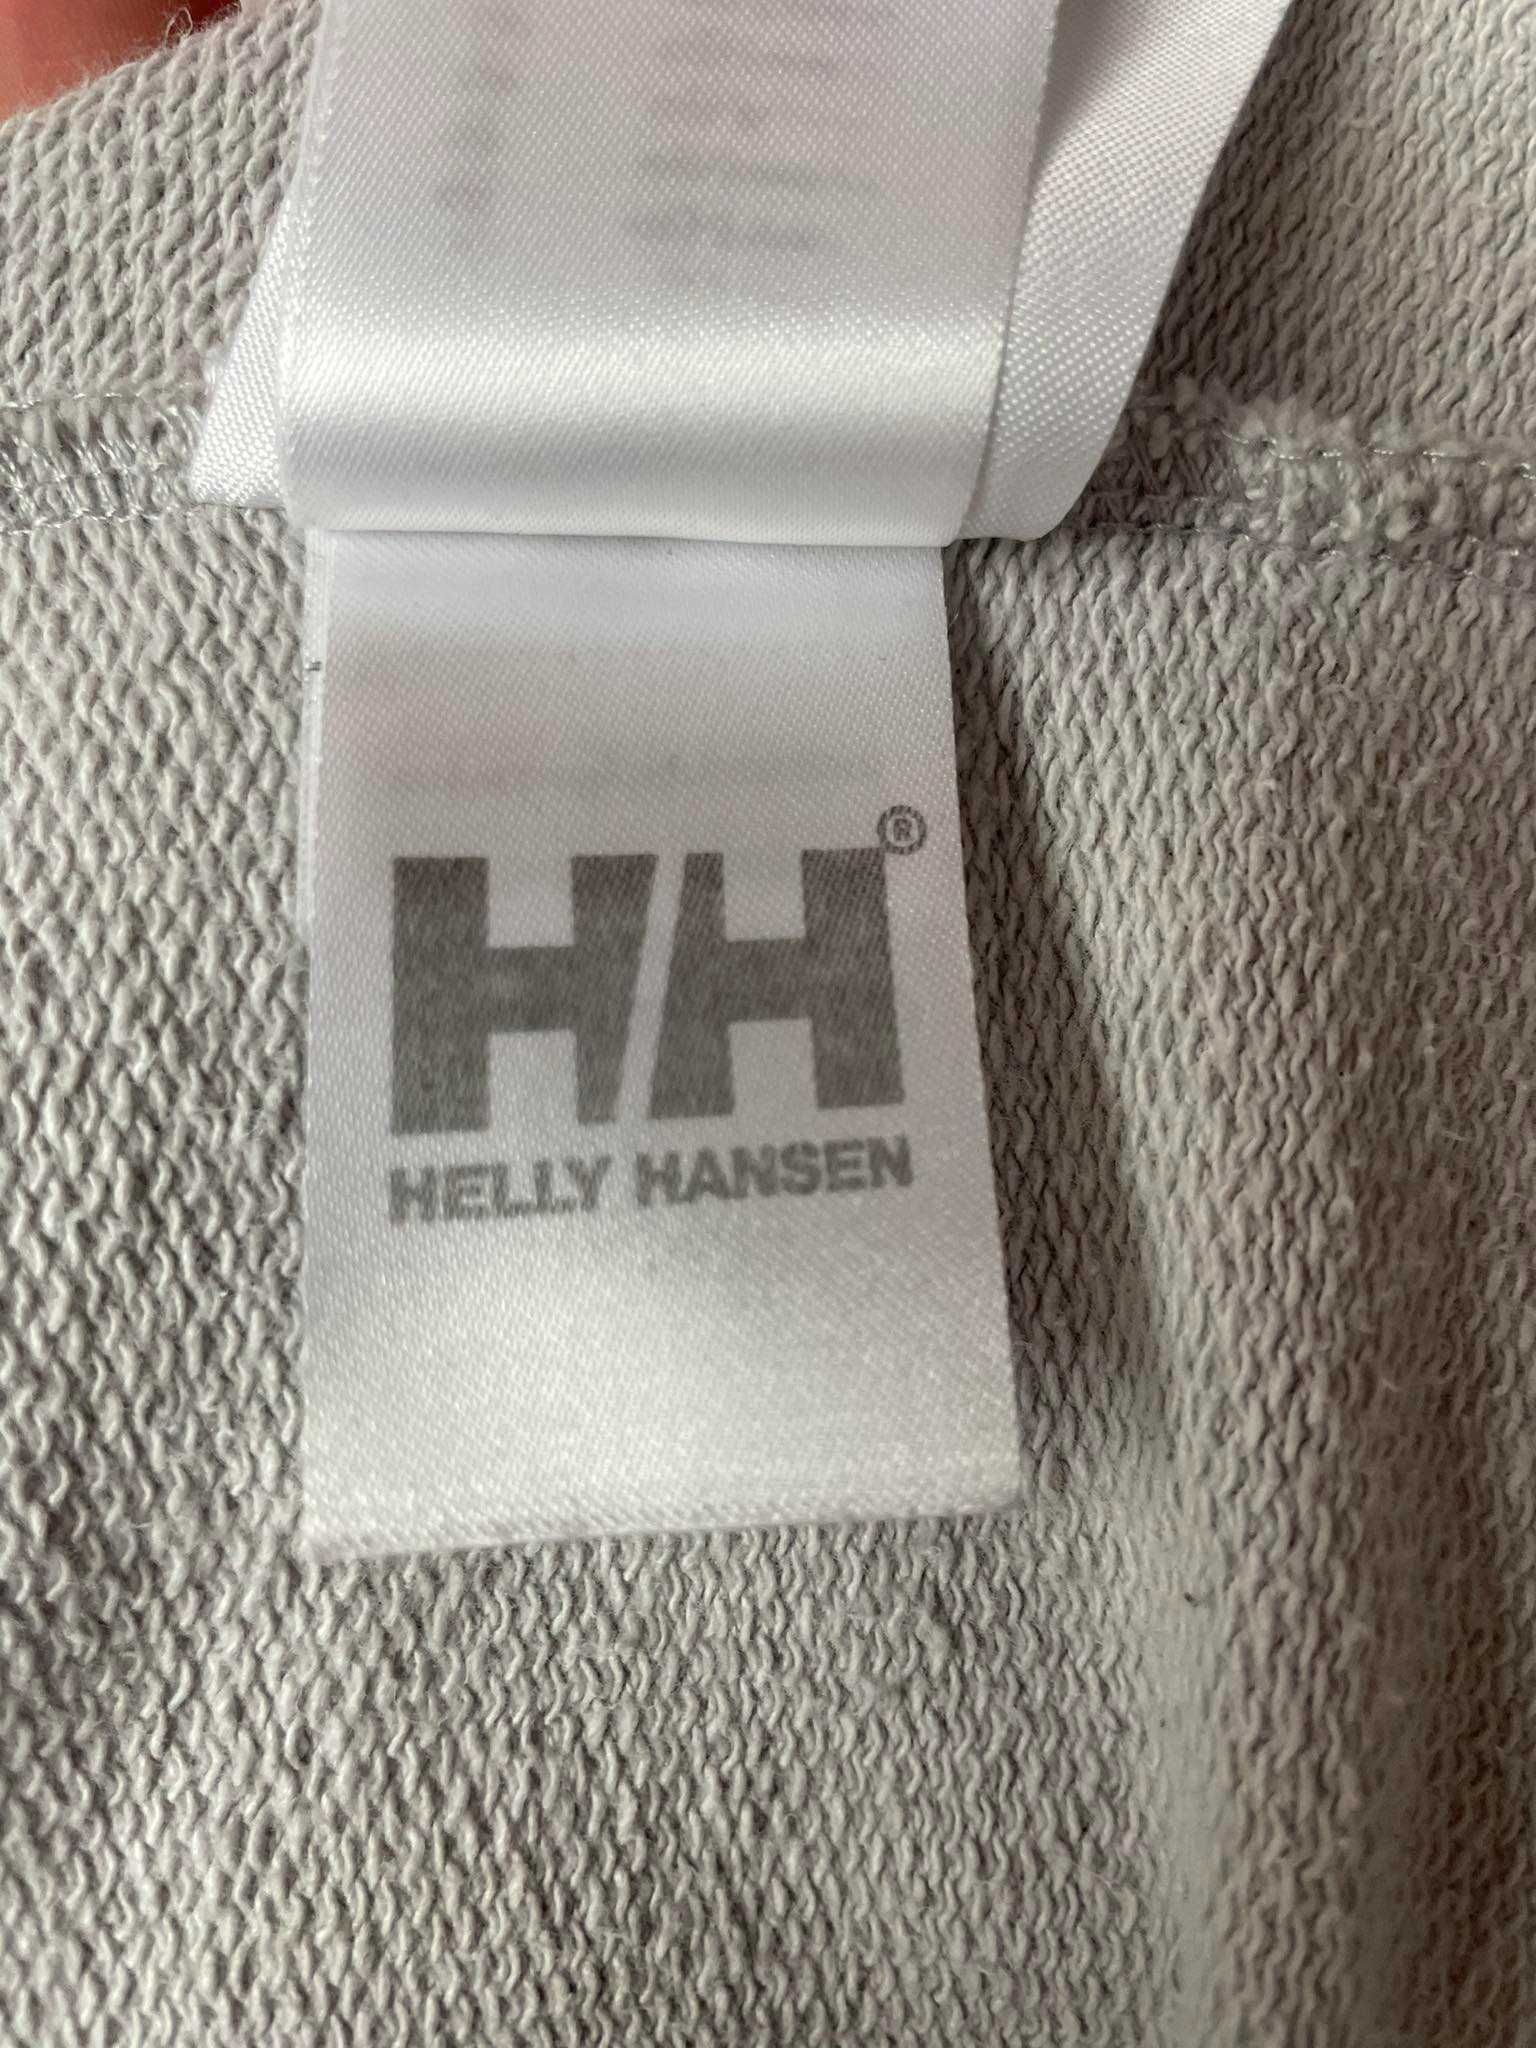 Bluza/golf Helly Hansen szara XL